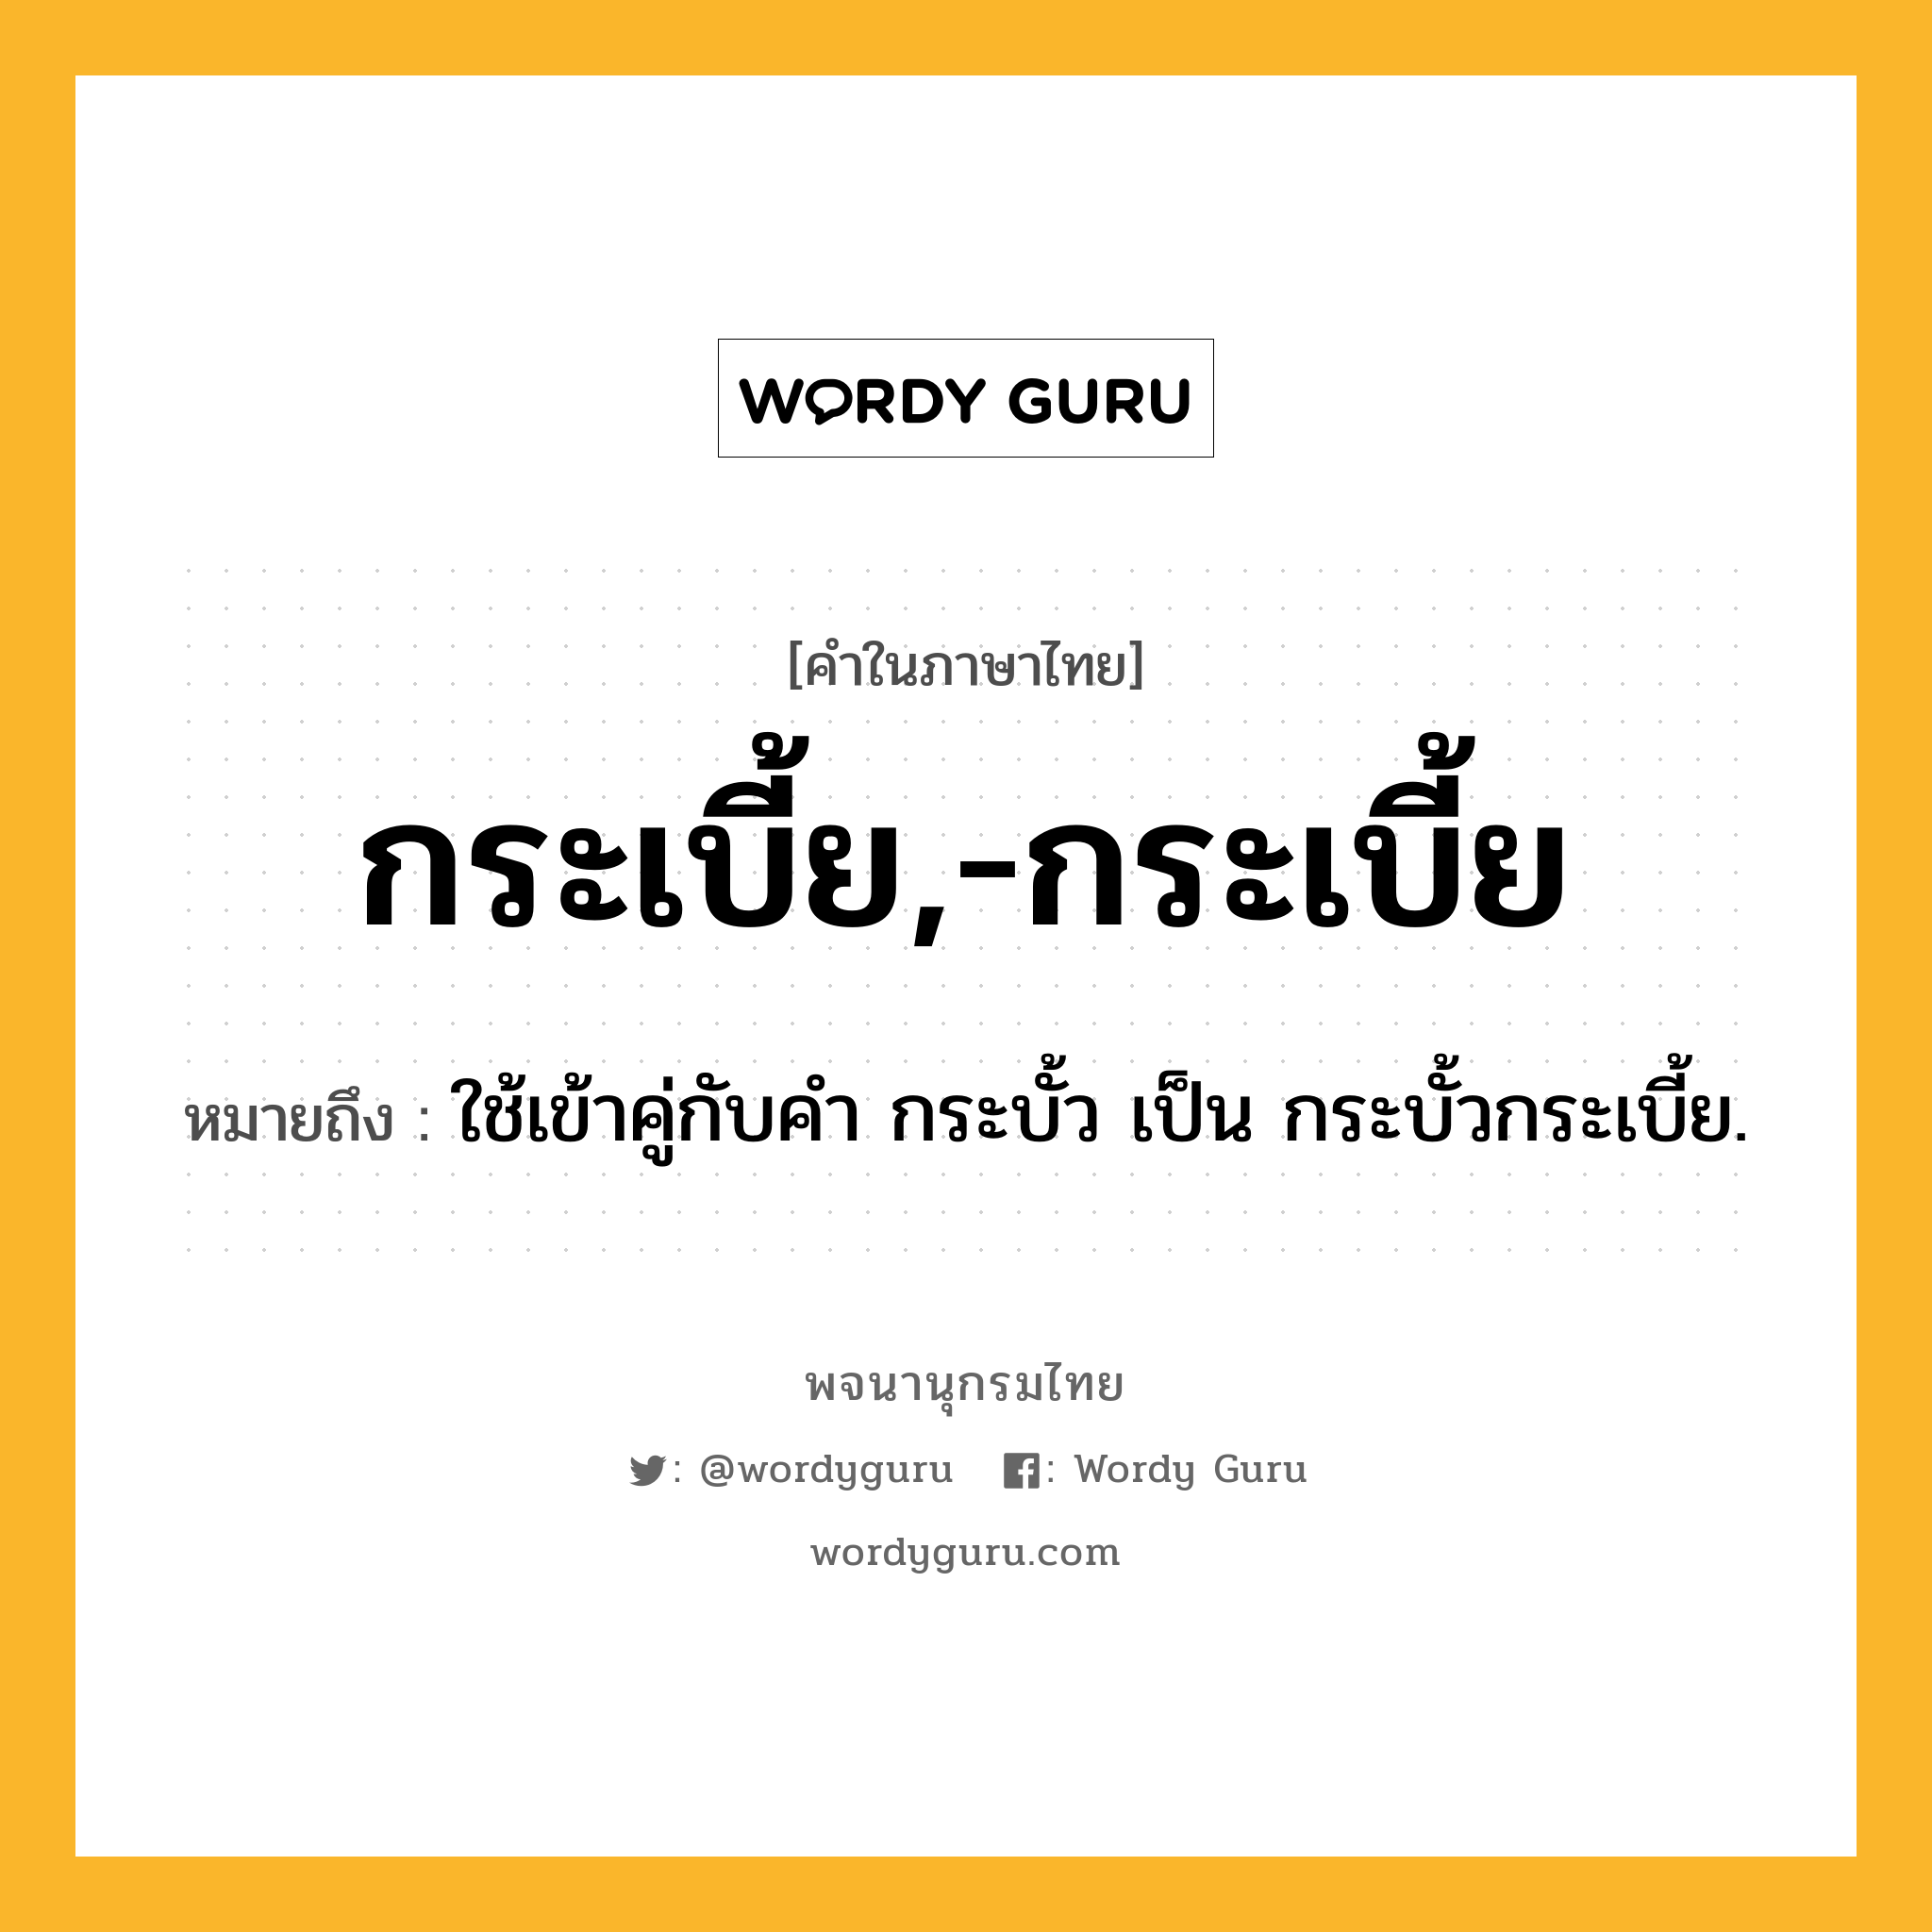 กระเบี้ย,-กระเบี้ย ความหมาย หมายถึงอะไร?, คำในภาษาไทย กระเบี้ย,-กระเบี้ย หมายถึง ใช้เข้าคู่กับคํา กระบั้ว เป็น กระบั้วกระเบี้ย.